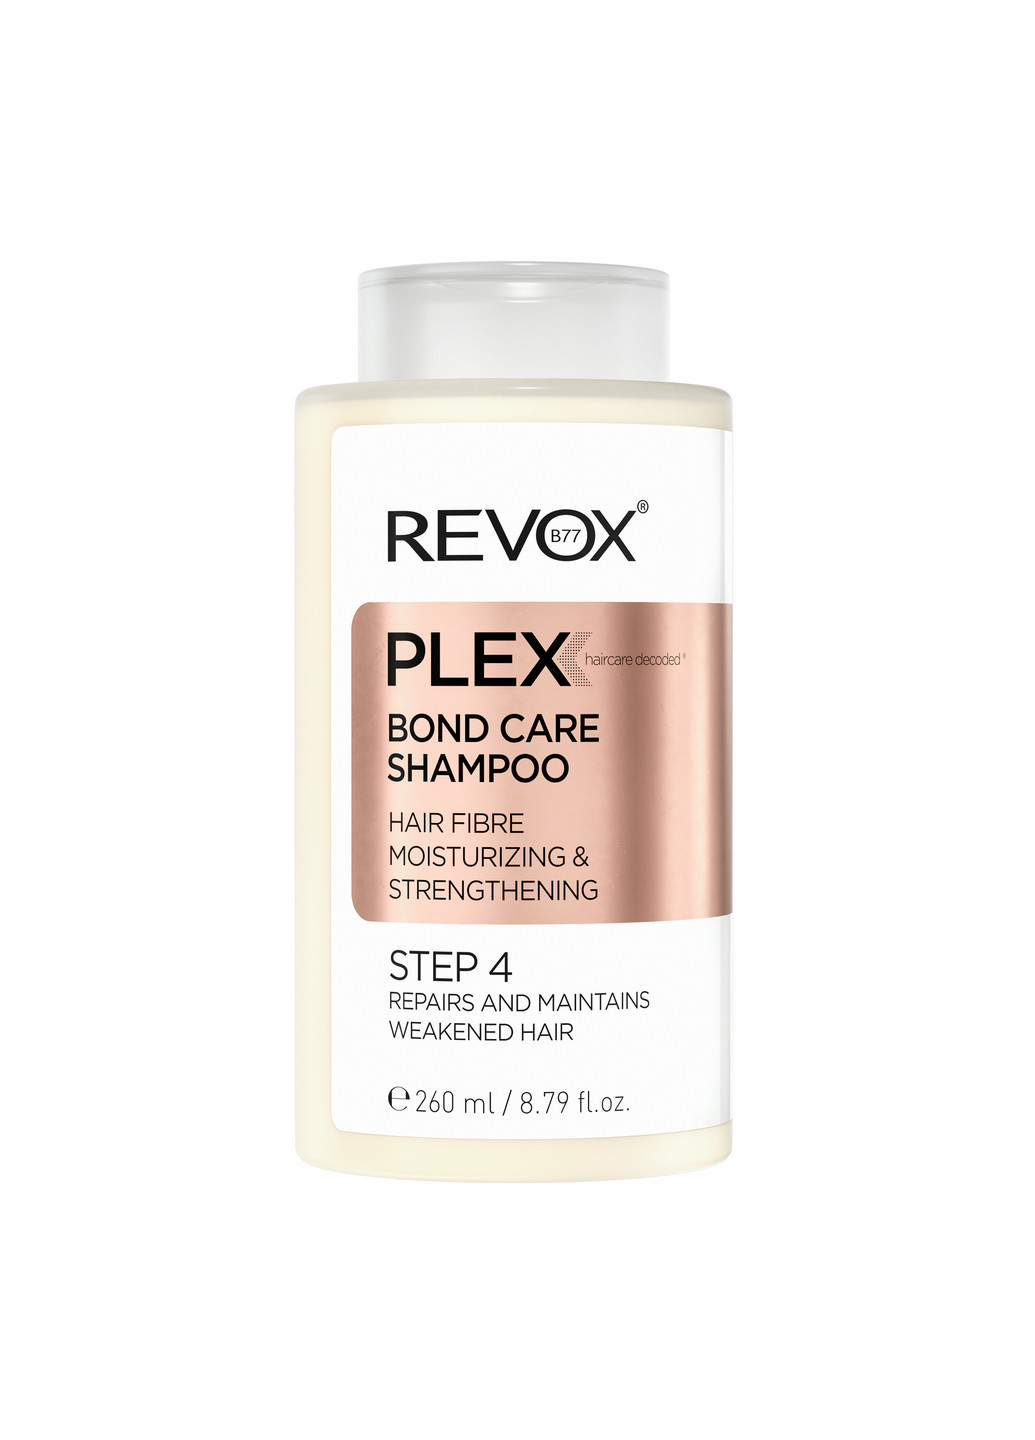 Шампунь для увлажнения и укрепления волос, шаг 4 B77 Plex Bond Care Shampoo STEP 4, 260 мл Revox (264921022)